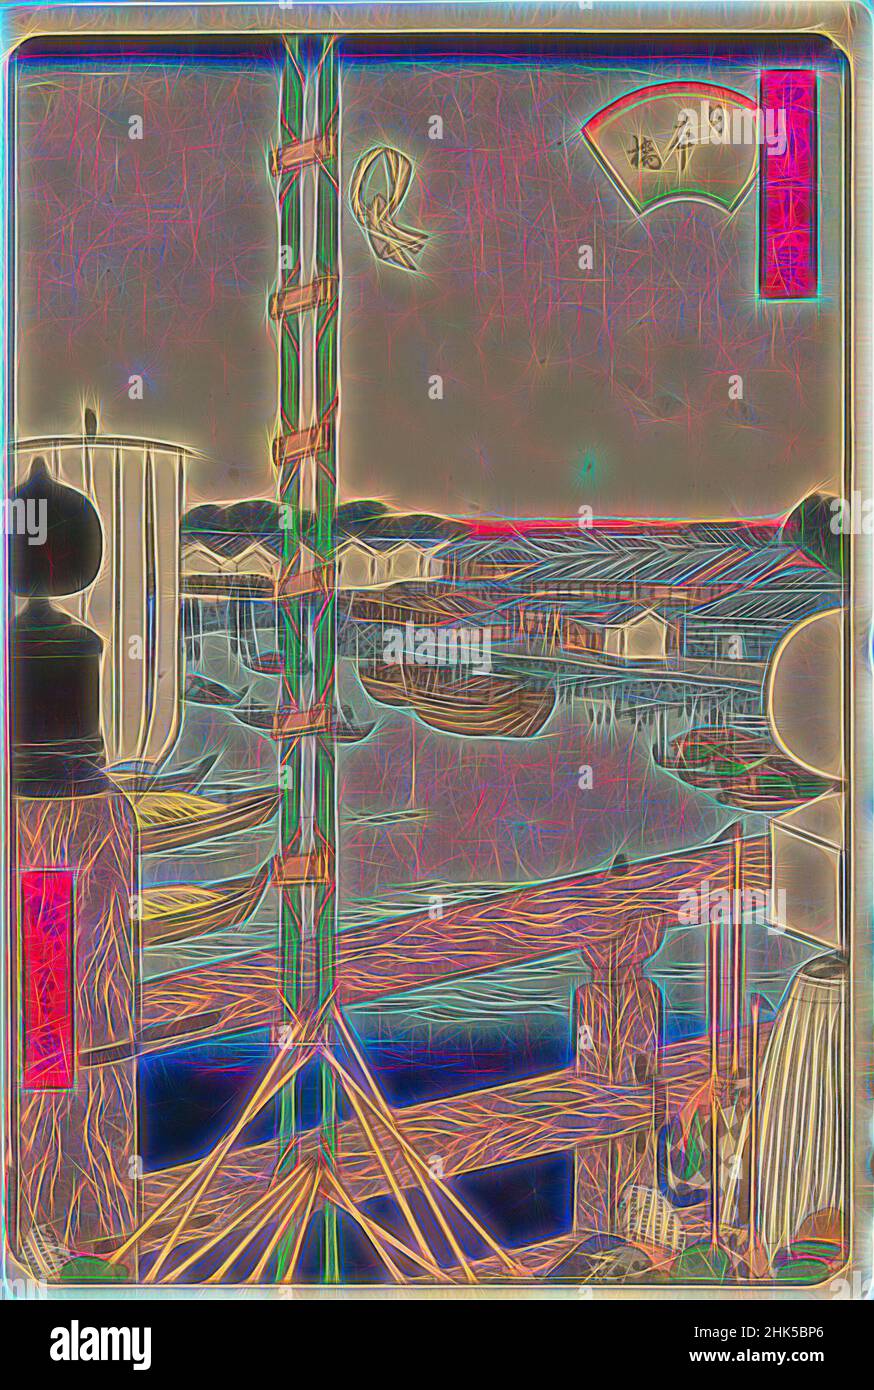 Inspiriert von Nihonbashi, aus der Serie sechsunddreißig Ansichten der östlichen Hauptstadt, aus der Serie Toto Sanju-rokkei, sechsunddreißig Ansichten der östlichen Hauptstadt, Utagawa Hiroshige II, Japanisch, 1826-1869, Farbholzschnitt auf Papier, Japan, 1862, Edo-Periode, 14 1/8 x 9 7/16 Zoll, 35,9 x 24 cm, neu erfunden von Artotop. Klassische Kunst neu erfunden mit einem modernen Twist. Design von warmen fröhlichen Leuchten der Helligkeit und Lichtstrahl Strahlkraft. Fotografie inspiriert von Surrealismus und Futurismus, umarmt dynamische Energie der modernen Technologie, Bewegung, Geschwindigkeit und Kultur zu revolutionieren Stockfoto